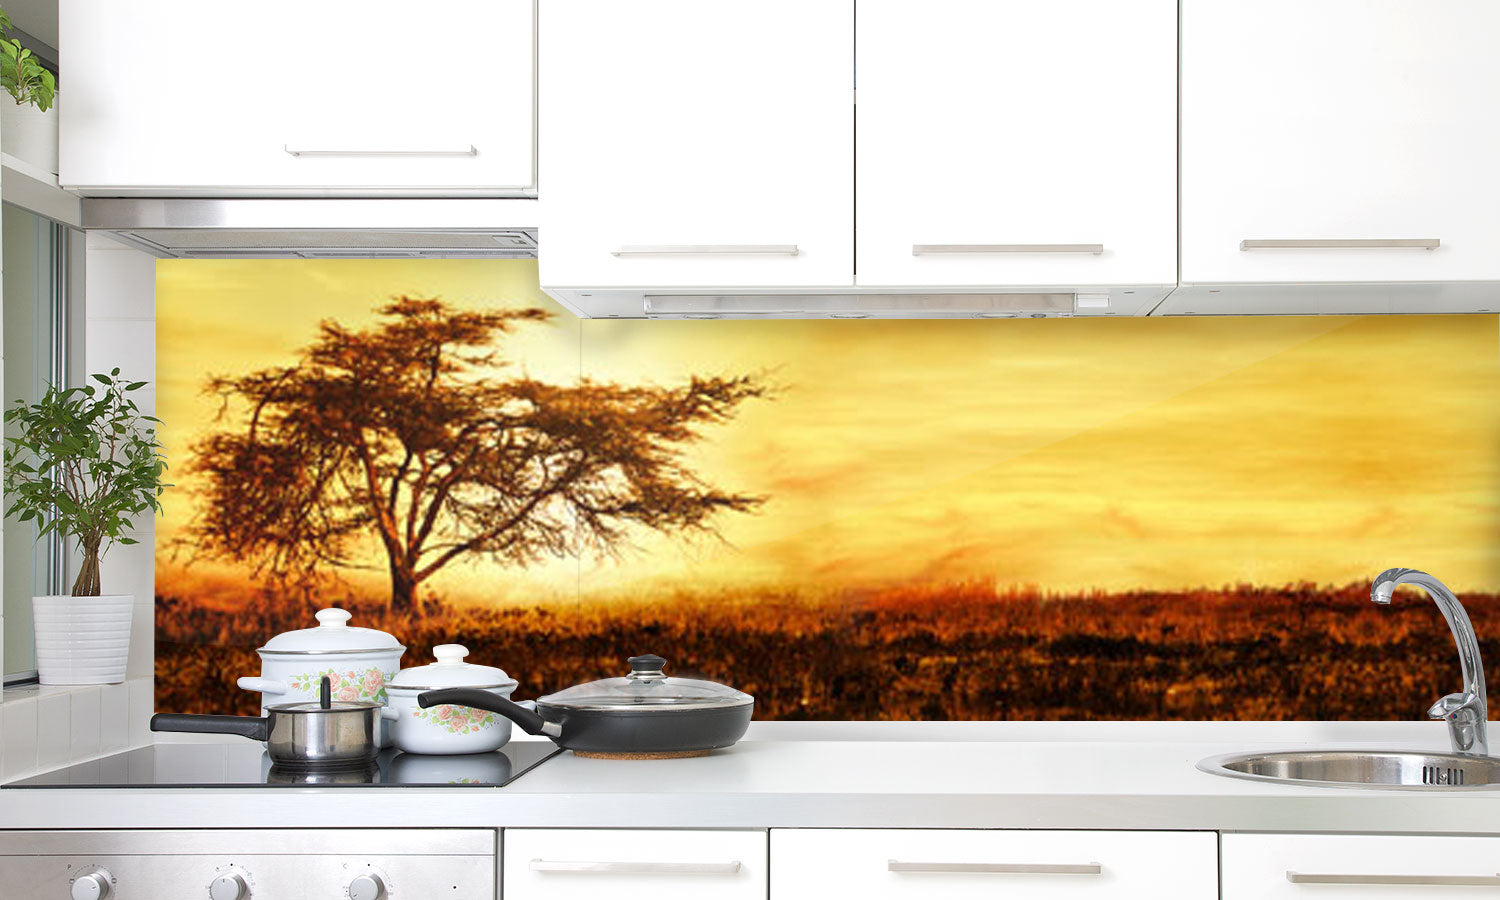 Kuhinjski paneli Big Africa - Stekleni / PVC plošče / Pleksi steklo - s tiskom za kuhinjo, Stenske obloge PKU0201 - Life-decor.si